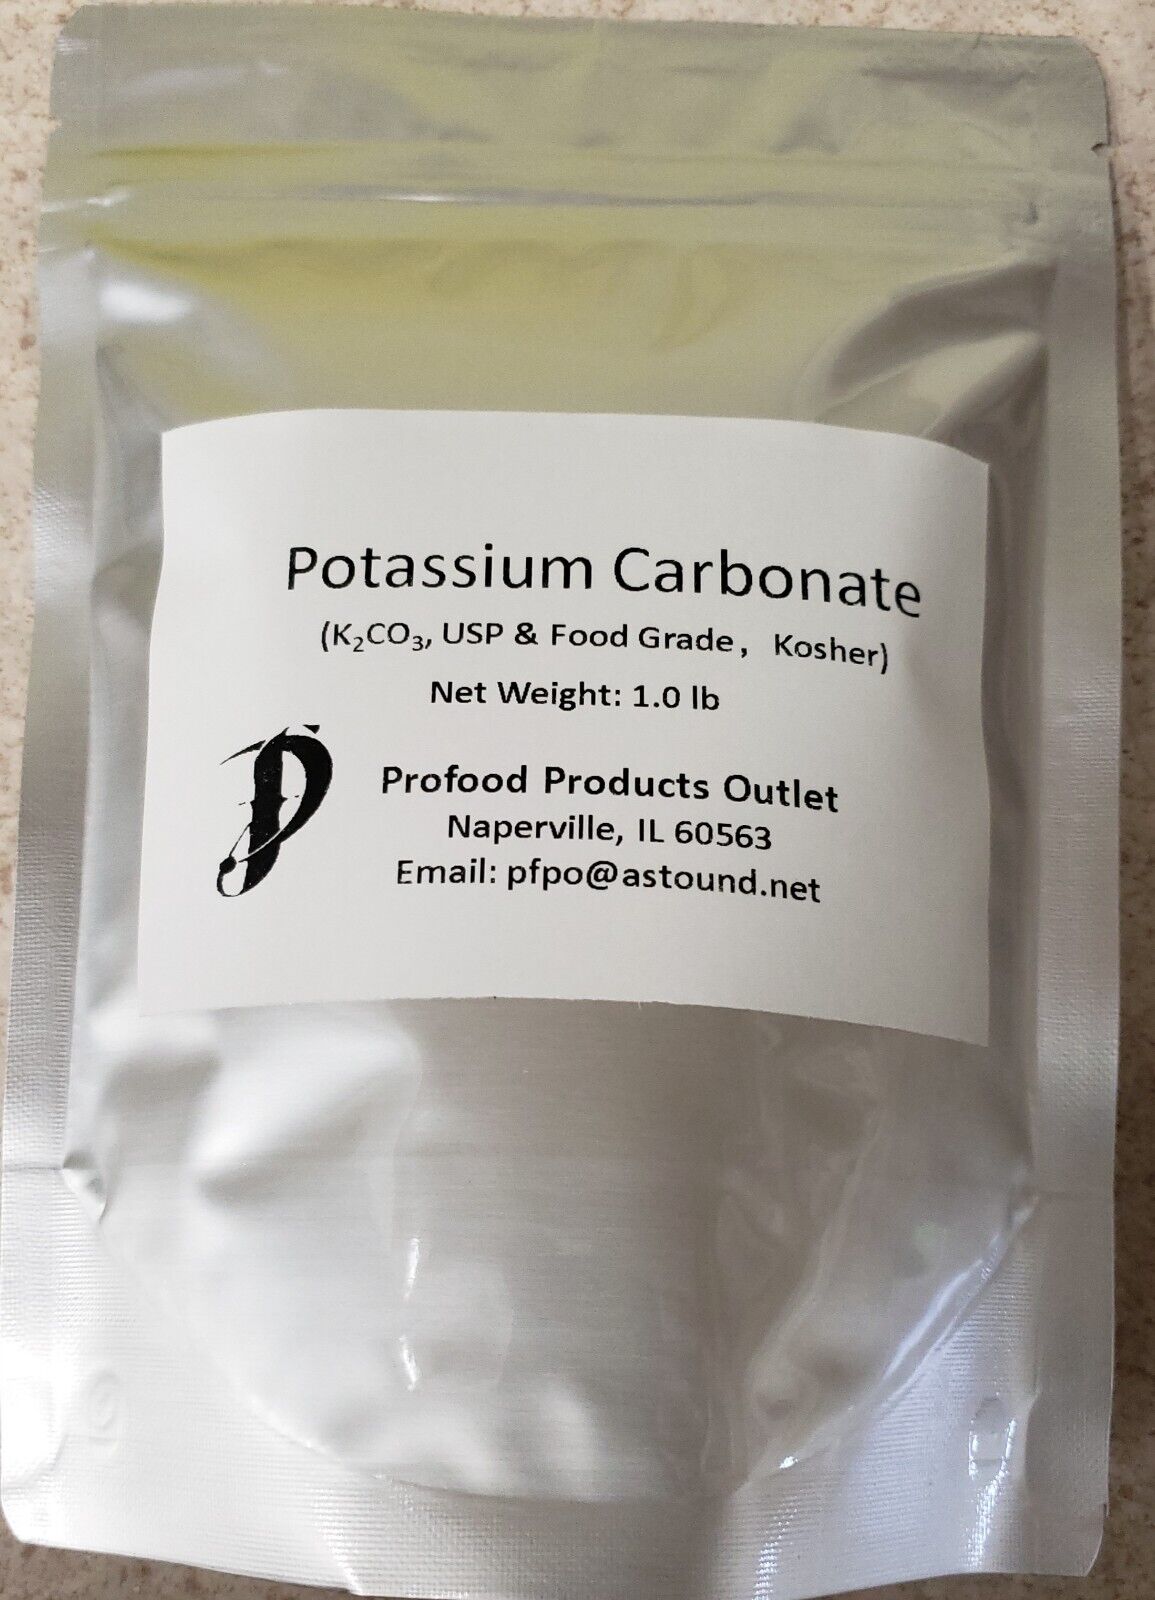 Potassium Carbonate (K2CO3), USP& Food Grade, 99.5% purity 1.0 lb pouch